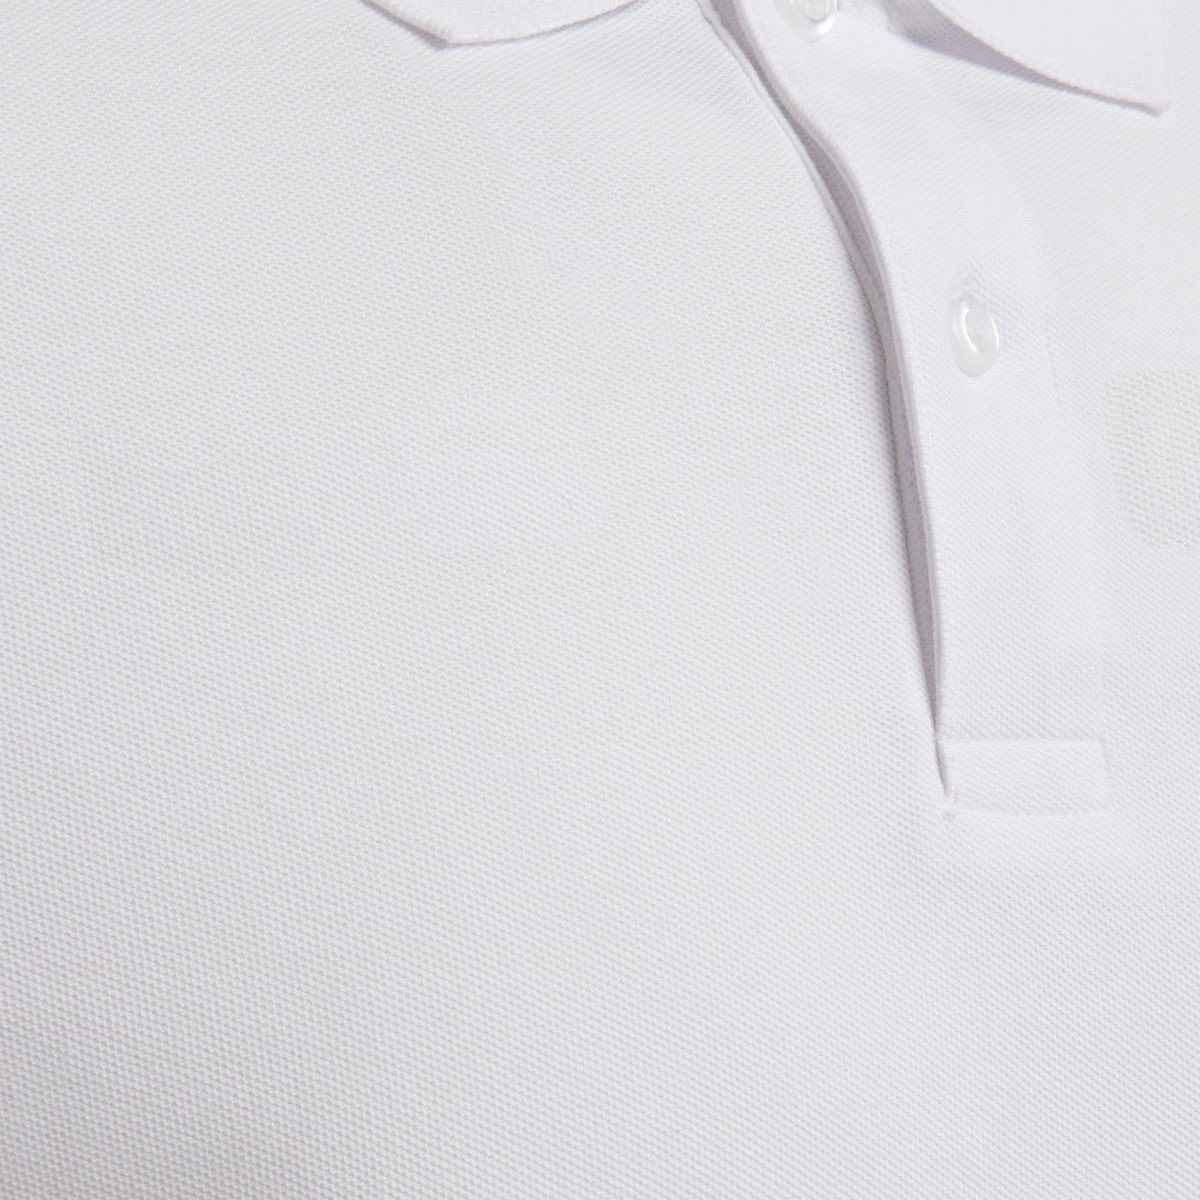 White COTTON 9001 - T-Shirt hummel Herren Poloshirts POLO HMLGOMover